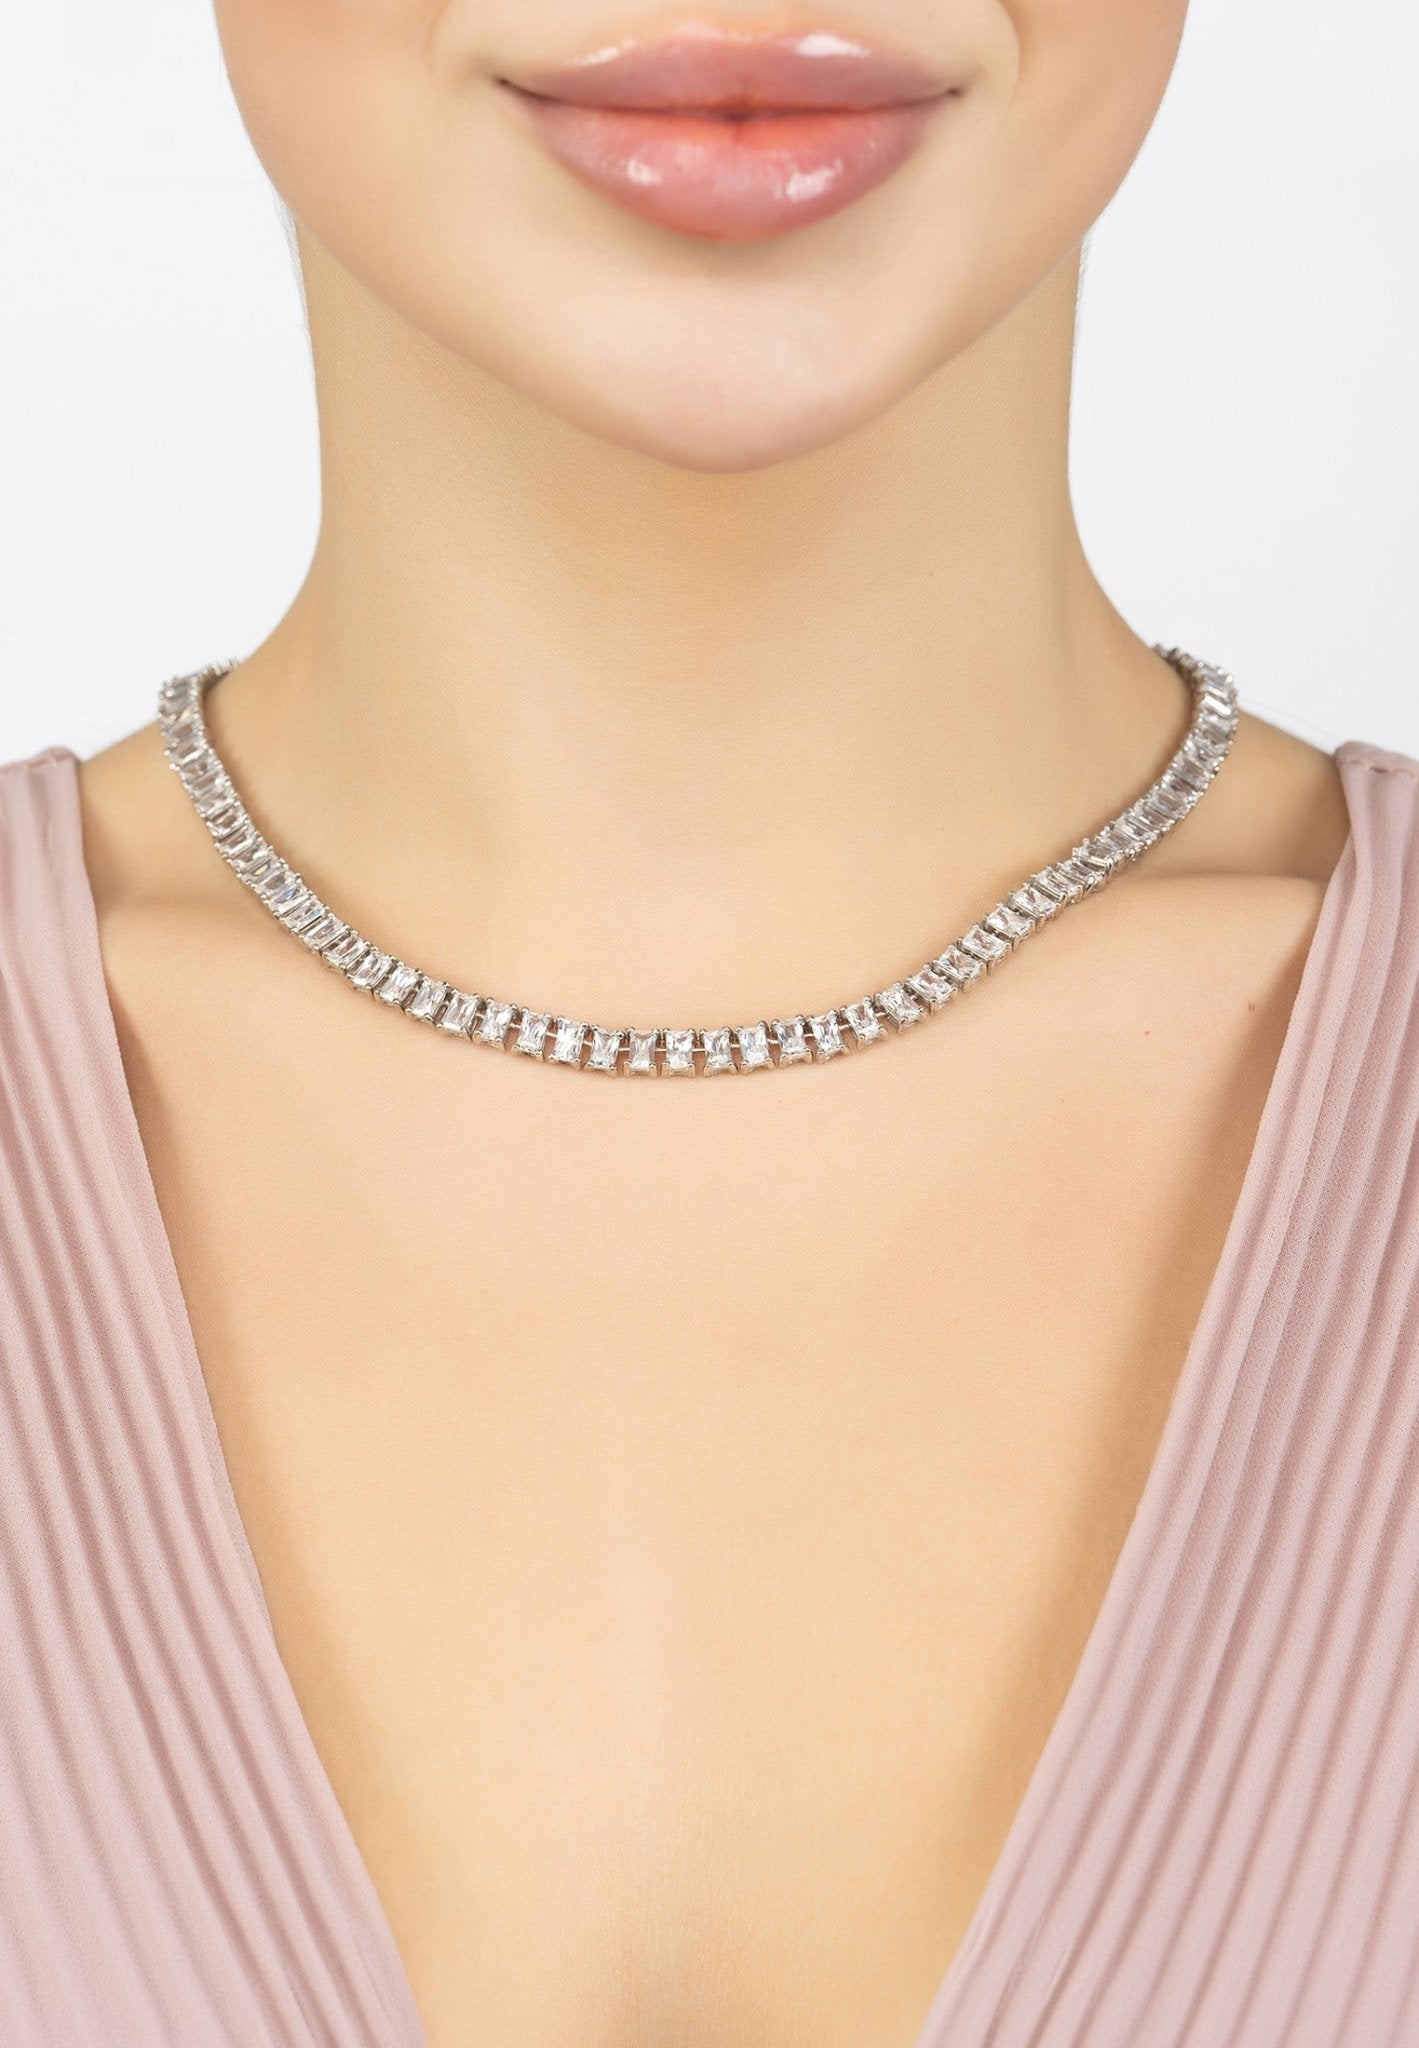 Baguette Tennis Necklace Silver - LATELITA Necklaces